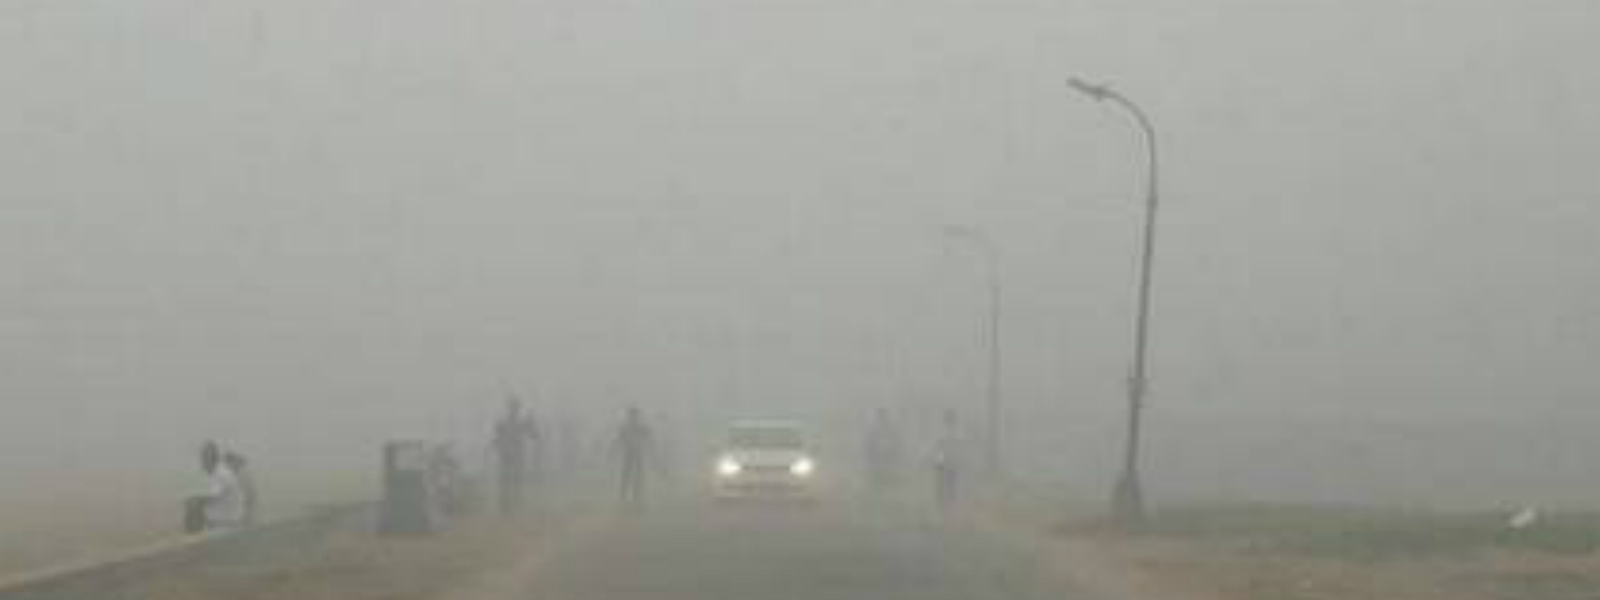 Met Department investigates reported smog